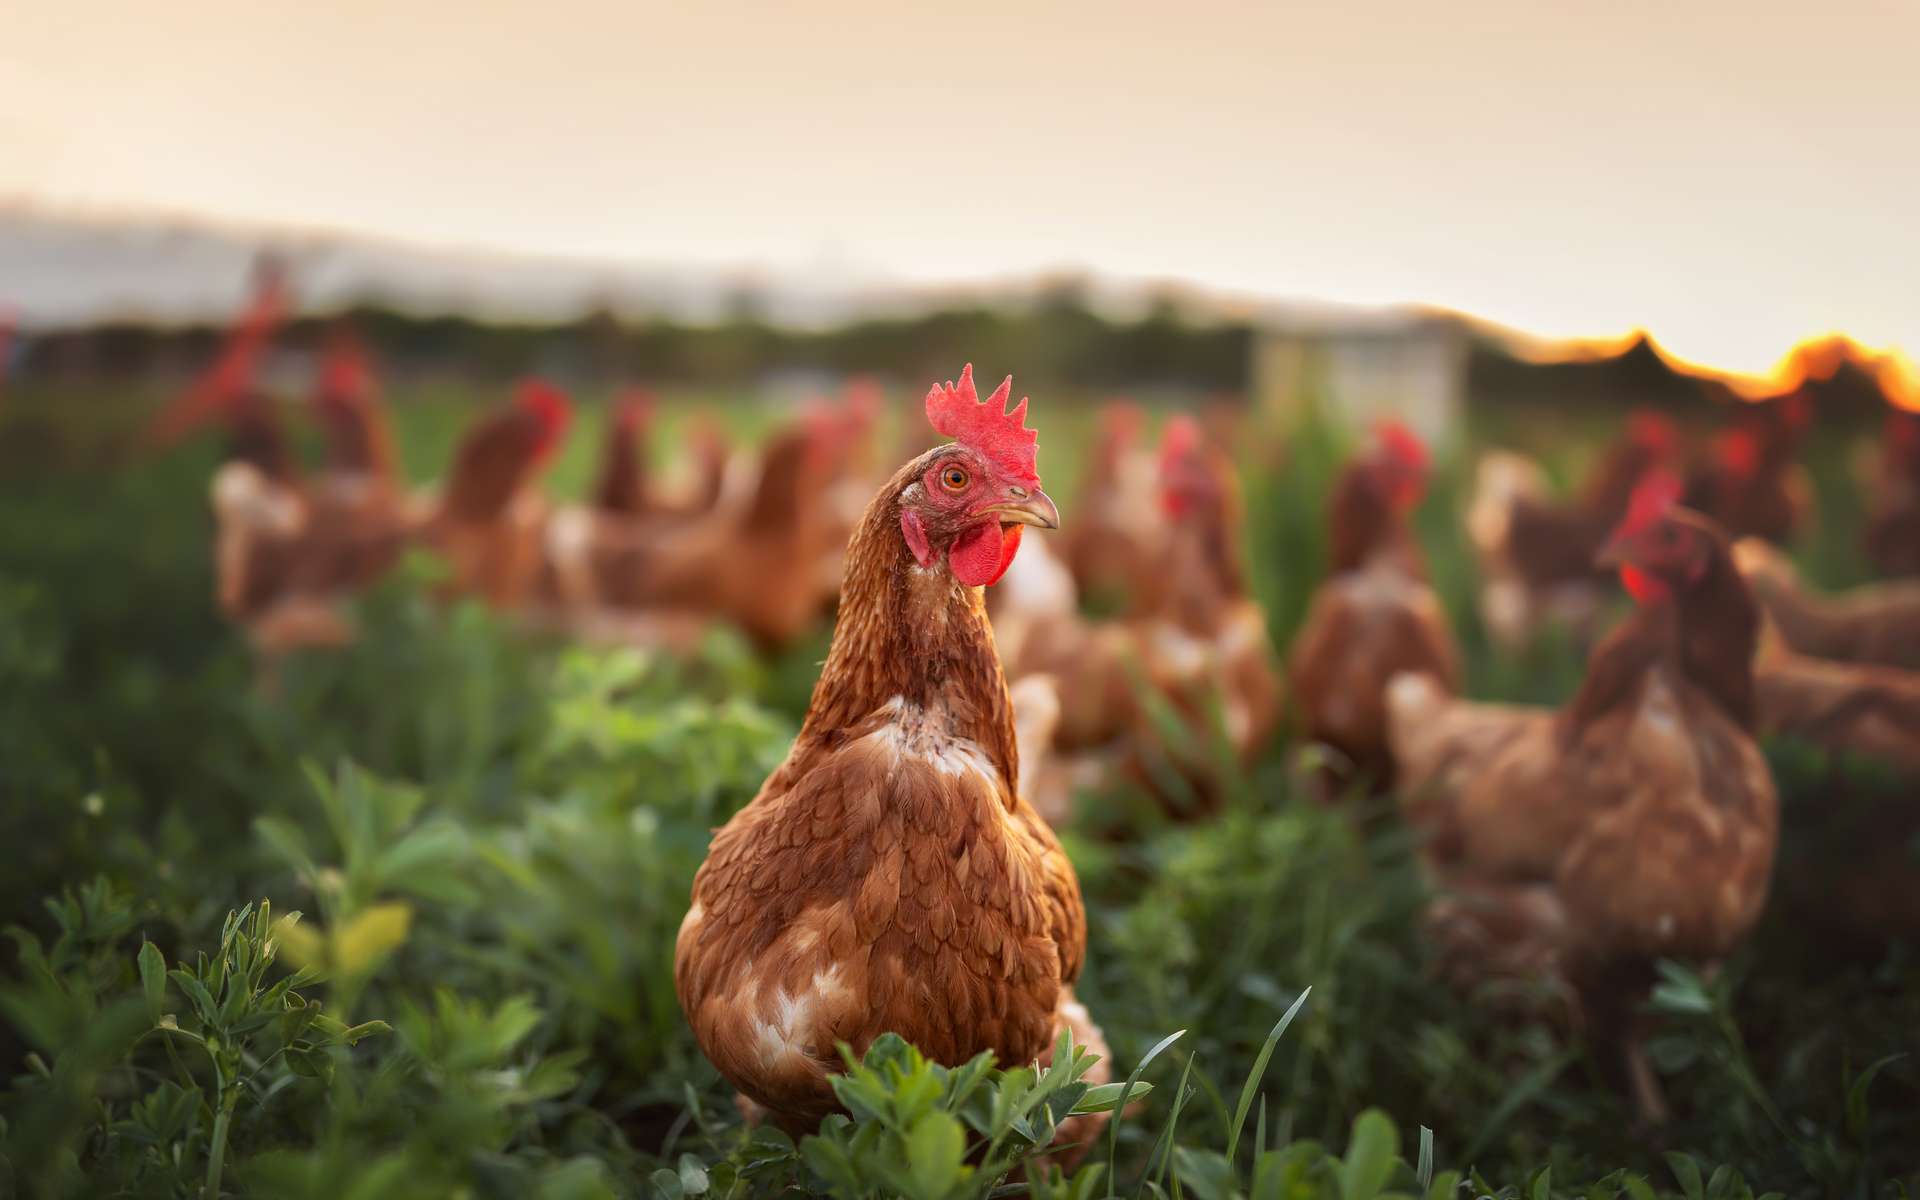 Bonne ou mauvaise idée ? Des poulets génétiquement modifiés pour qu'ils résistent à la grippe aviaire